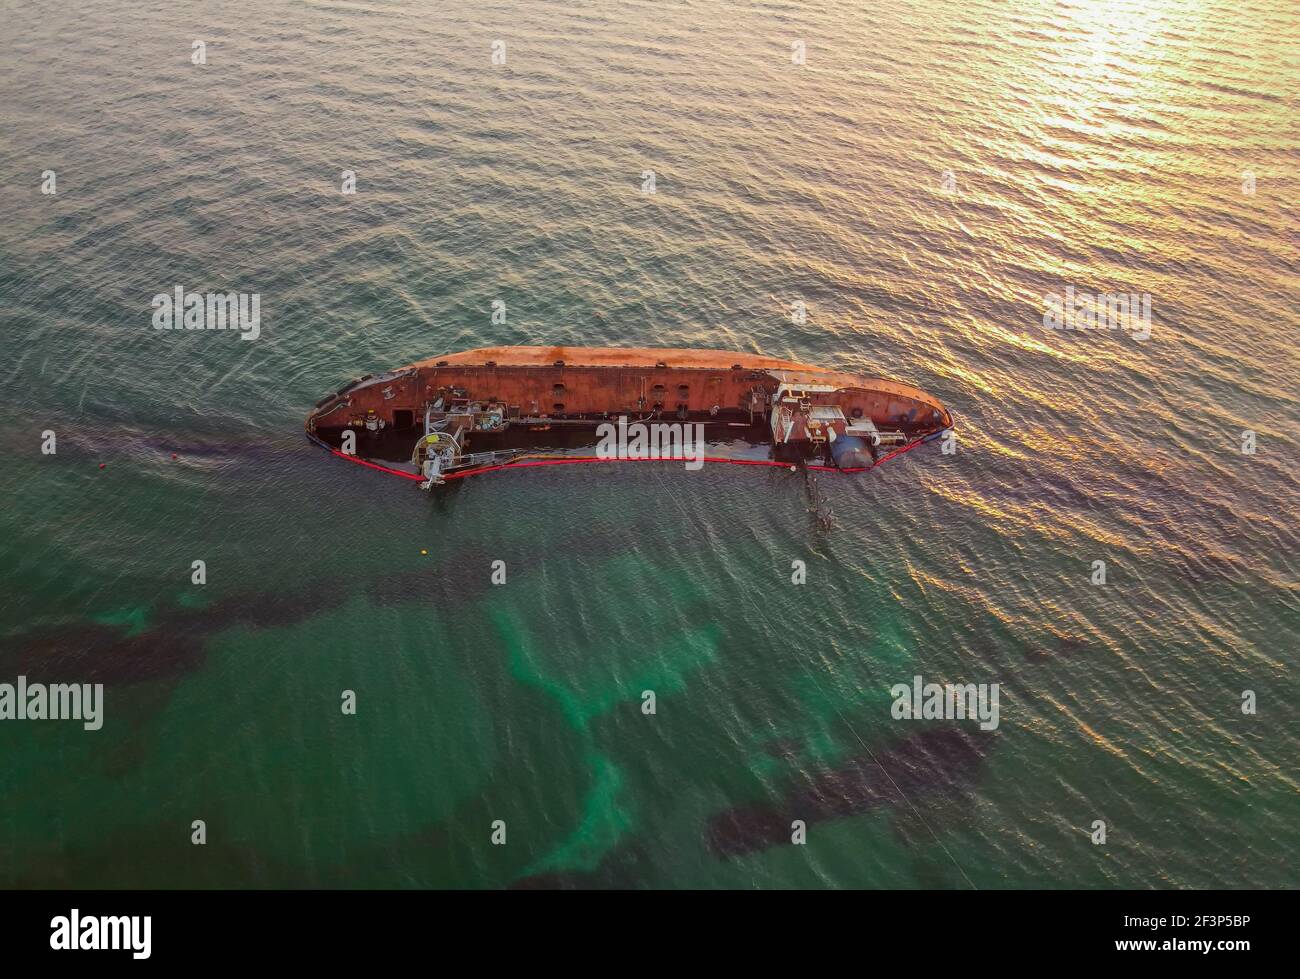 Das alte rostige Schiff wurde von einem Sturm gestrandet. Ölpest von einem Tanker, Umweltverschmutzung. Schiff bei Sunris Stockfoto